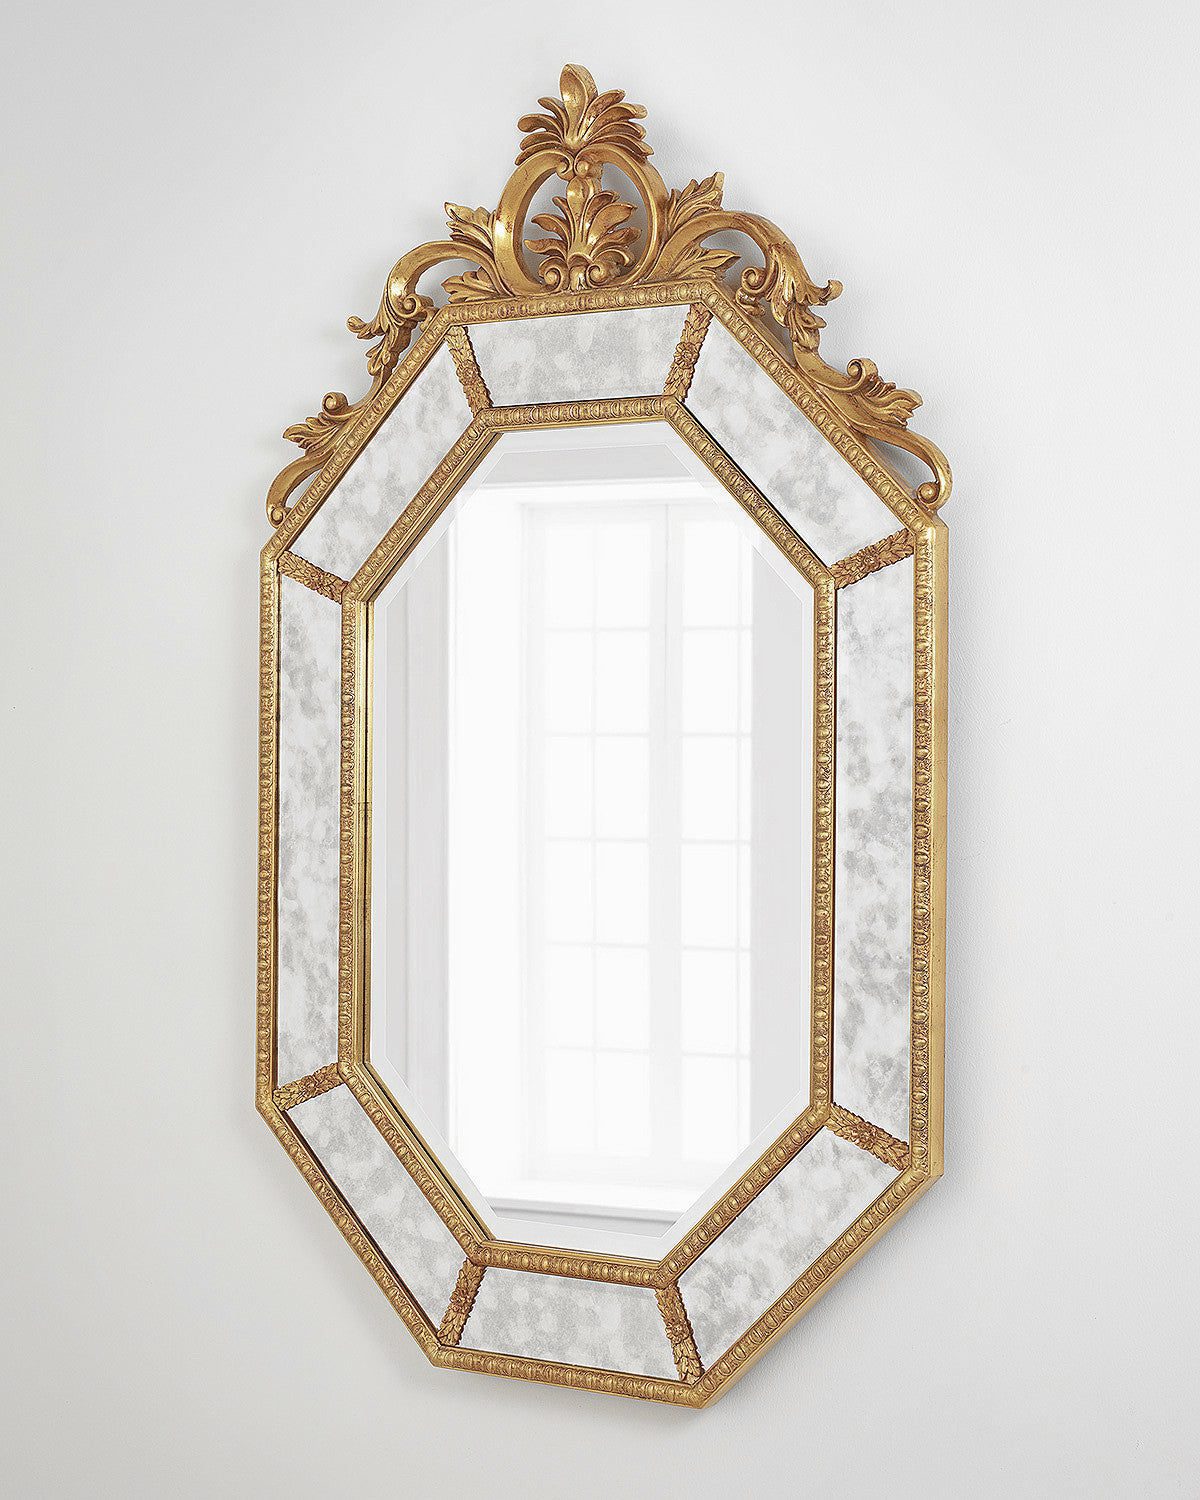 Большое золотое настенное восьмиугольное зеркало "Лидс" в стиле барокко (вид сбоку)